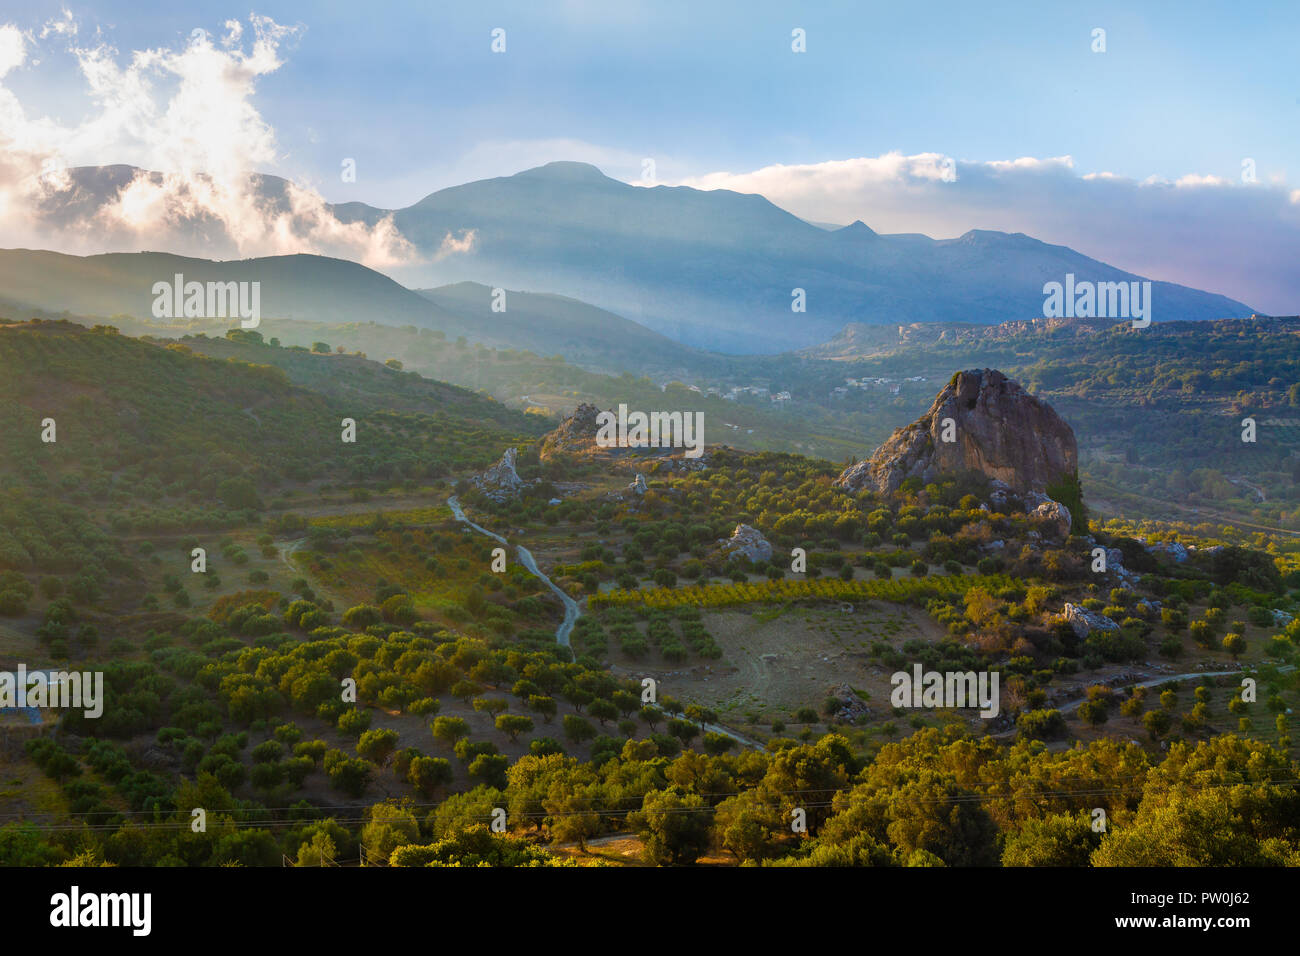 Las plantaciones de olivos en las altas montañas de la isla de Creta, Grecia Foto de stock